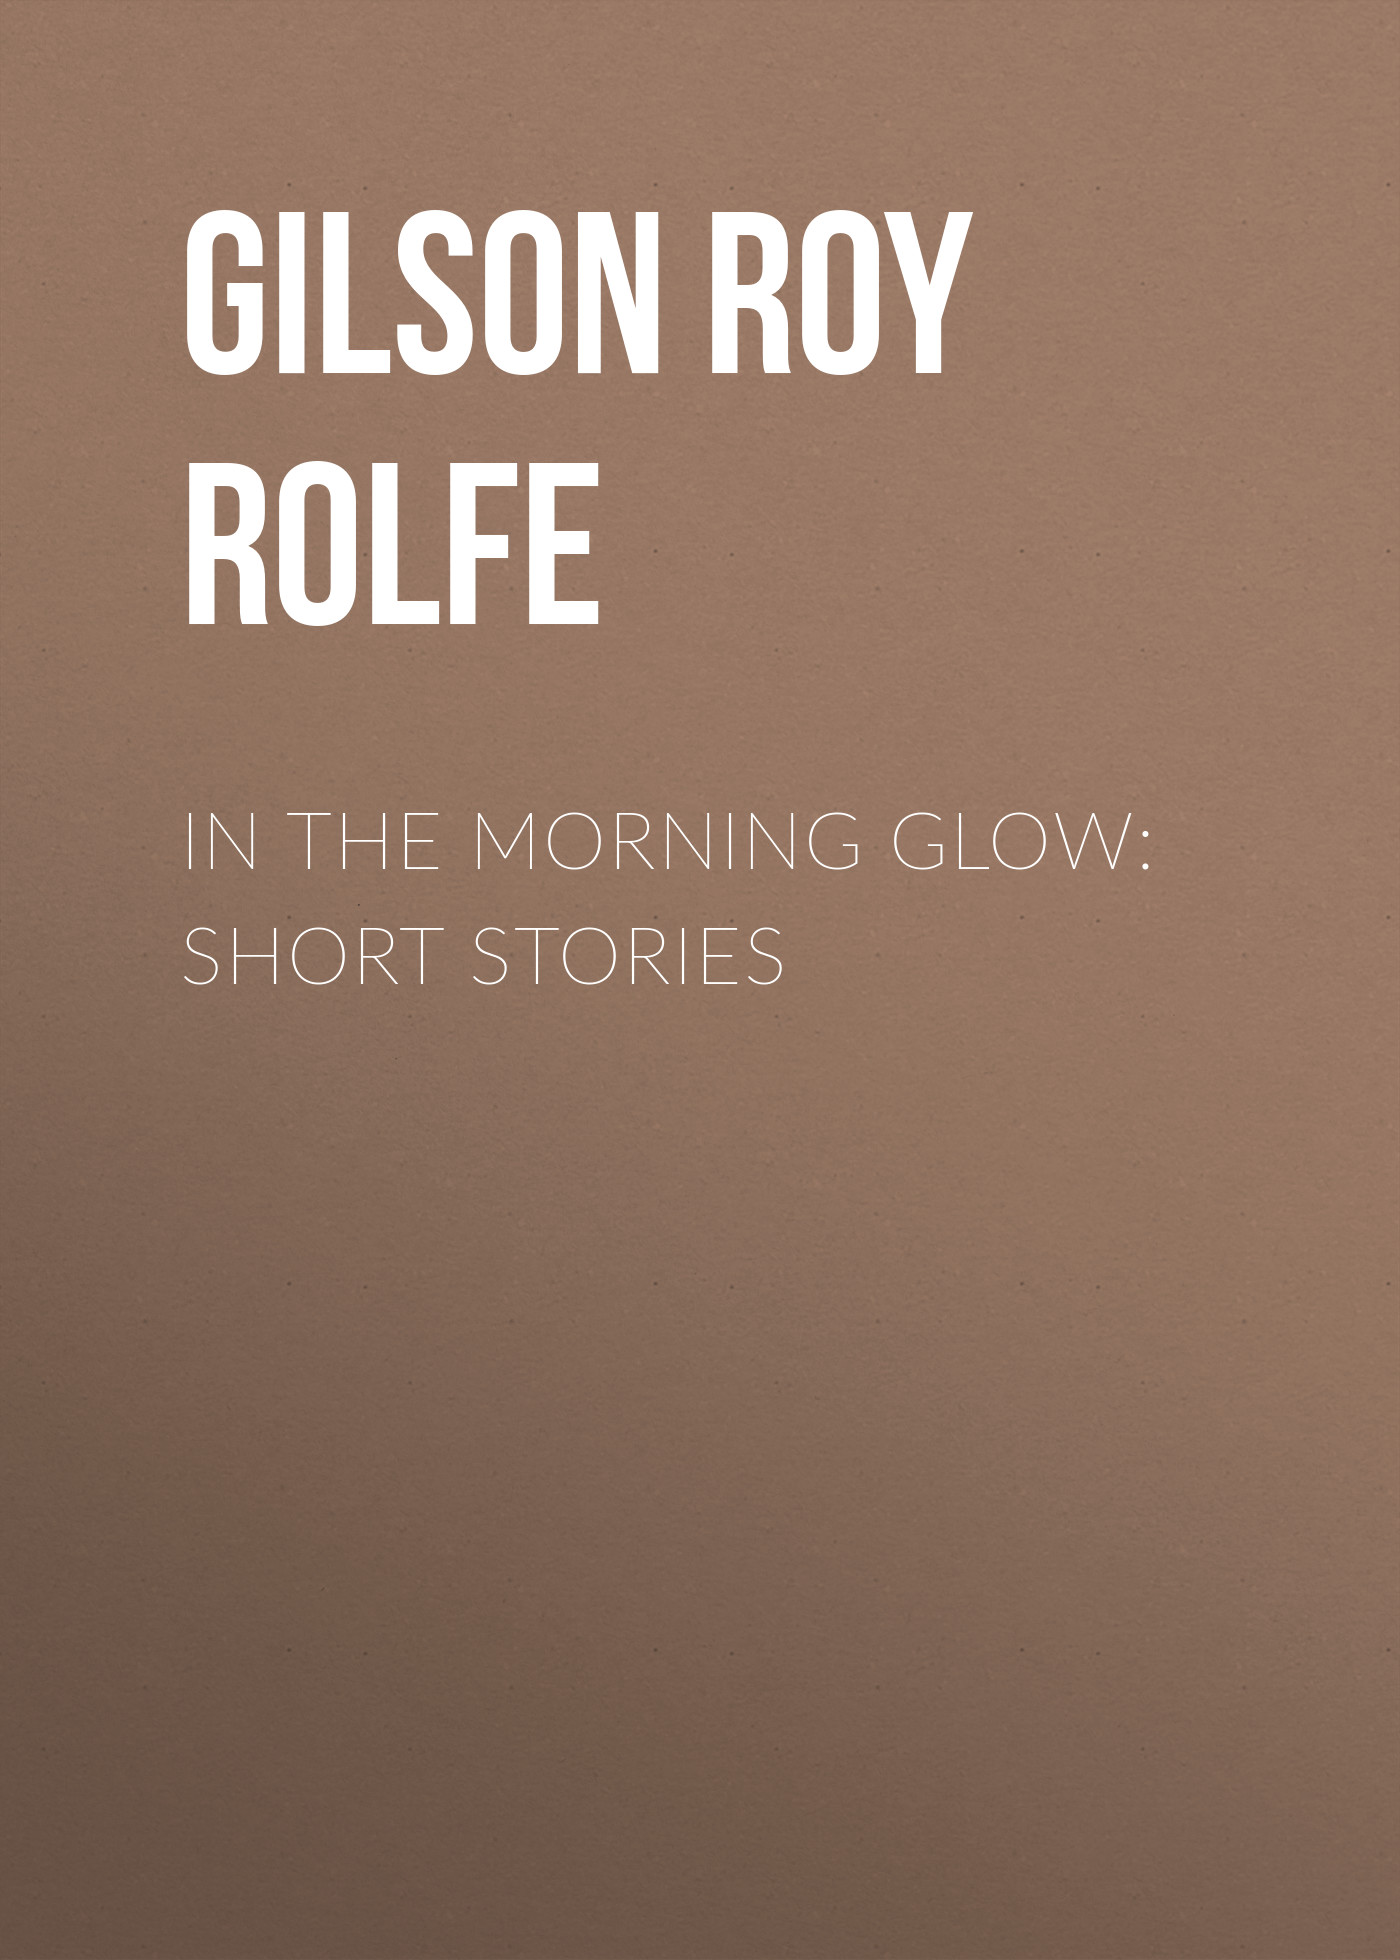 Книга In the Morning Glow: Short Stories из серии , созданная Roy Gilson, может относится к жанру Зарубежная старинная литература, Зарубежная классика, Рассказы. Стоимость электронной книги In the Morning Glow: Short Stories с идентификатором 24937589 составляет 0 руб.